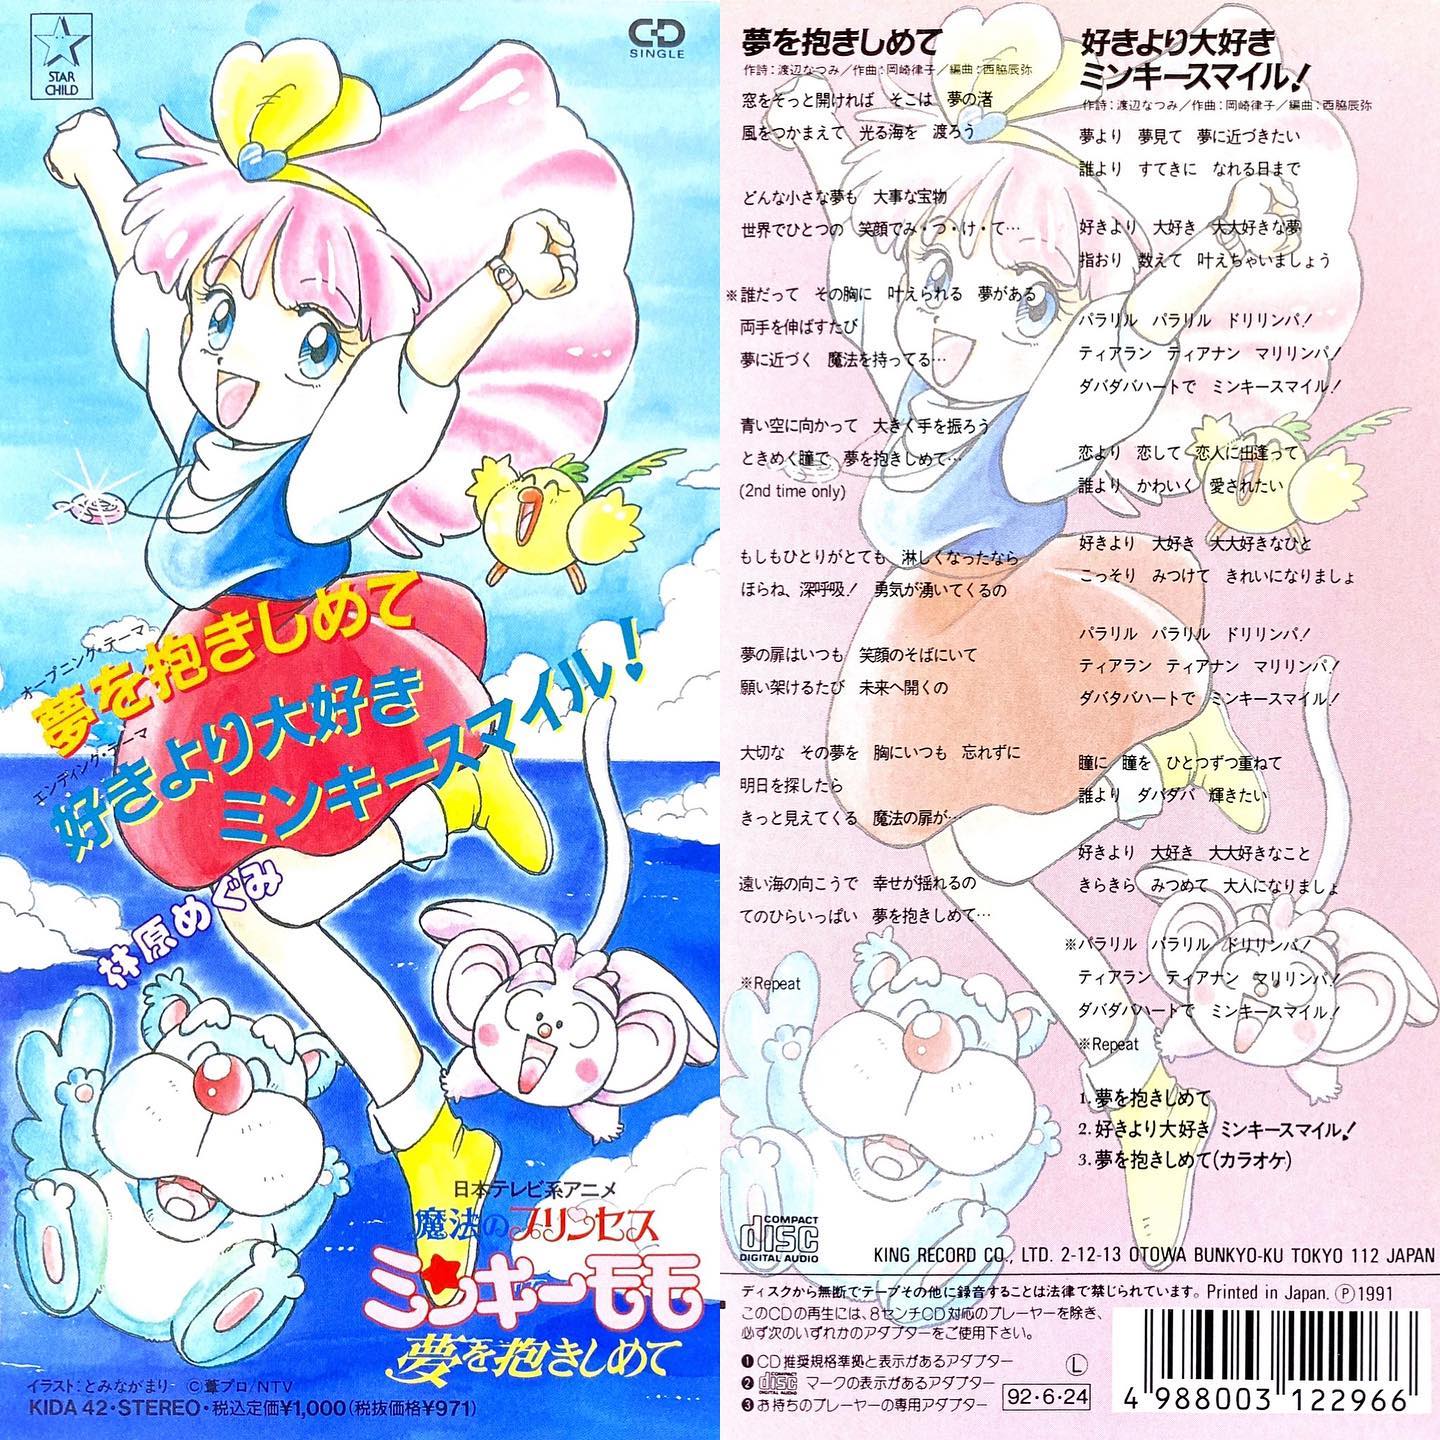 夢を抱きしめて/林原めぐみ魔法のプリンセス ミンキーモモ 夢を抱きしめて OP2(1991年~1992年)#センチメンタルグルーヴ#sentimental_groove #アニメ #アニソン #8cmCD #短冊CD#ミンキーモモ #林原めぐみ #魔法少女 #anime #animesong